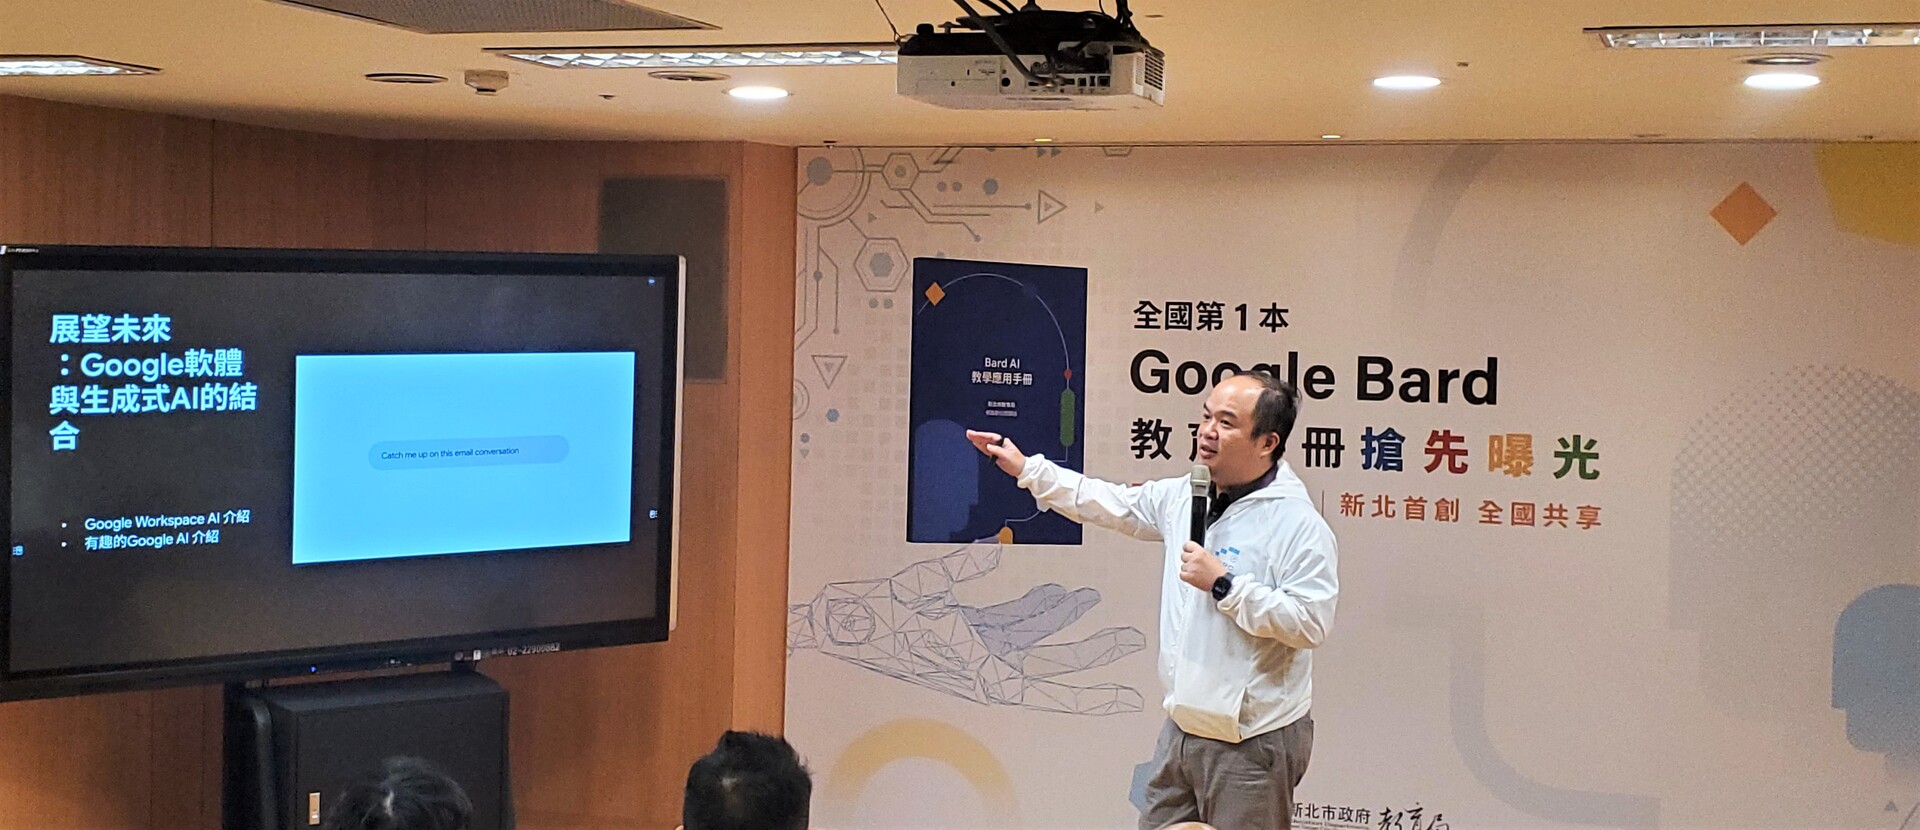 龍埔國小施信源老師分享Google+Bard教育應用手冊